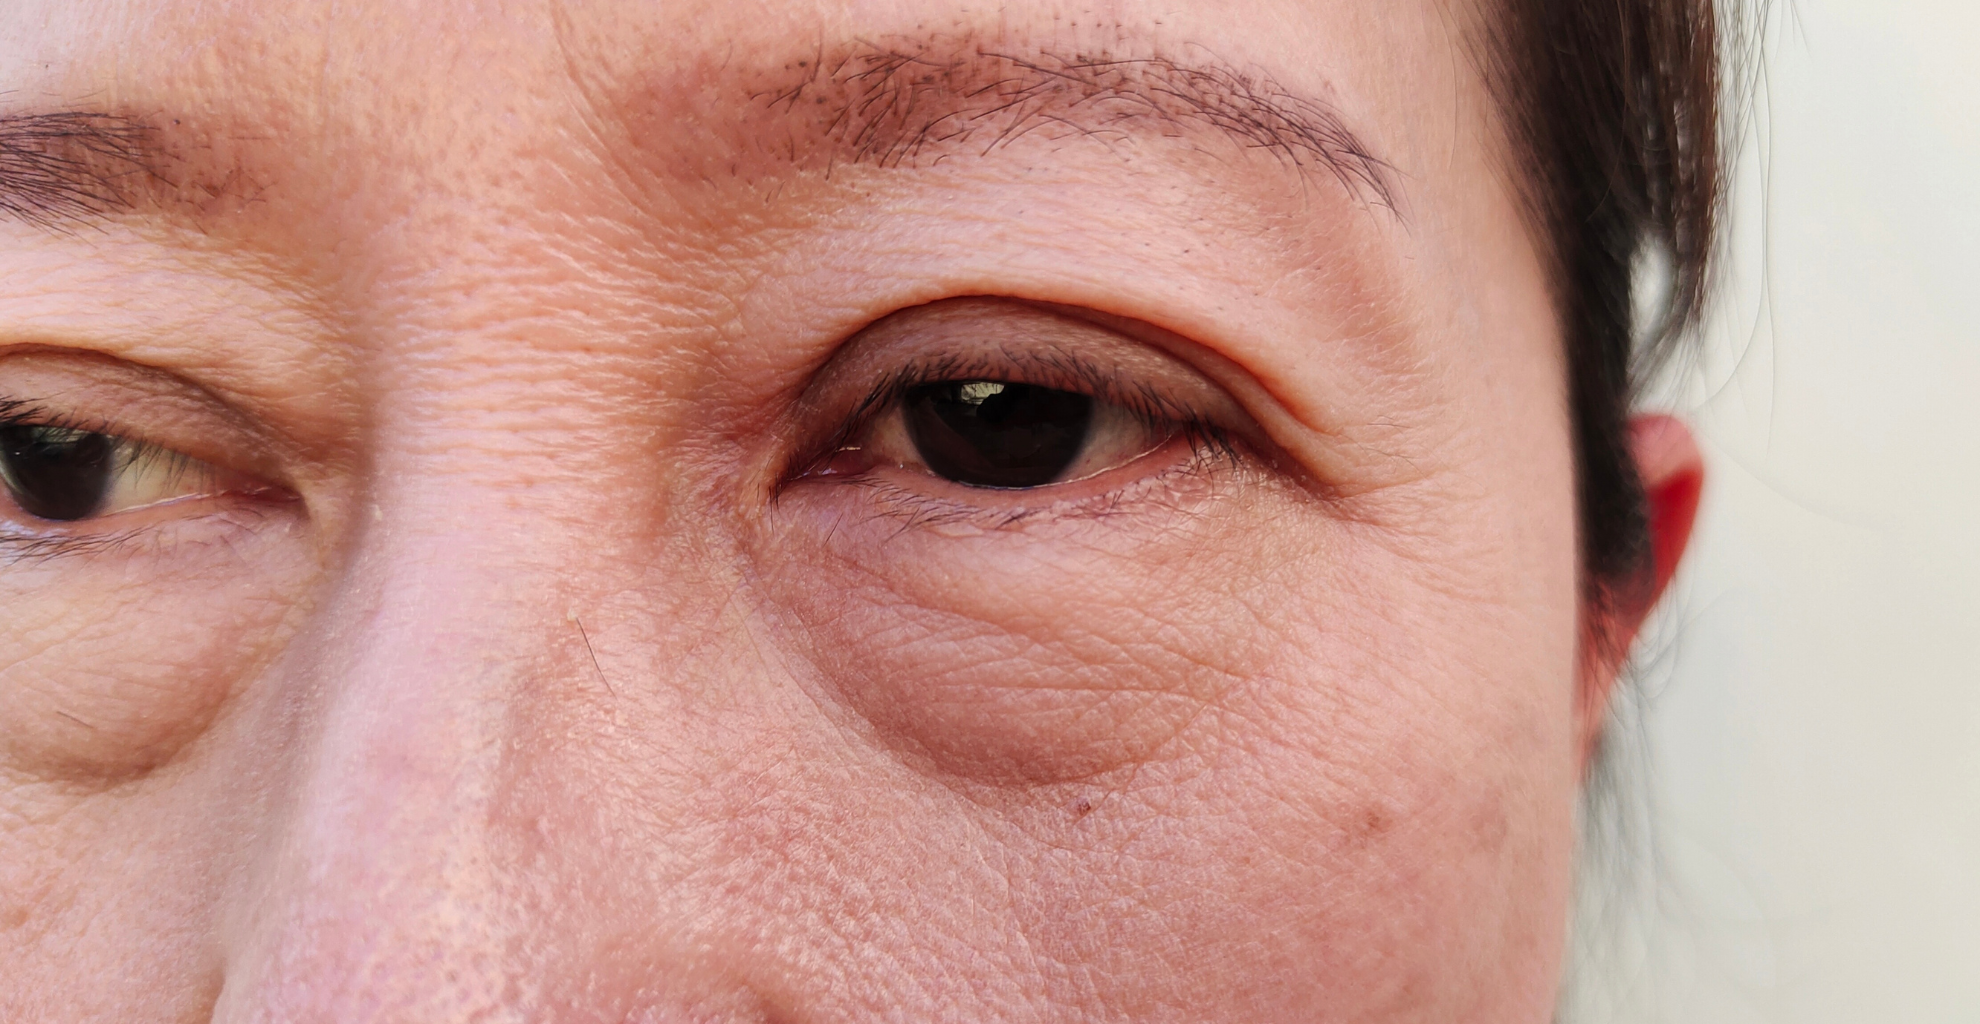 Augenringe und Schwellungen sind ein Hinweis, Diagnostik zur Ursachensuche in Anspruch zu nehmen